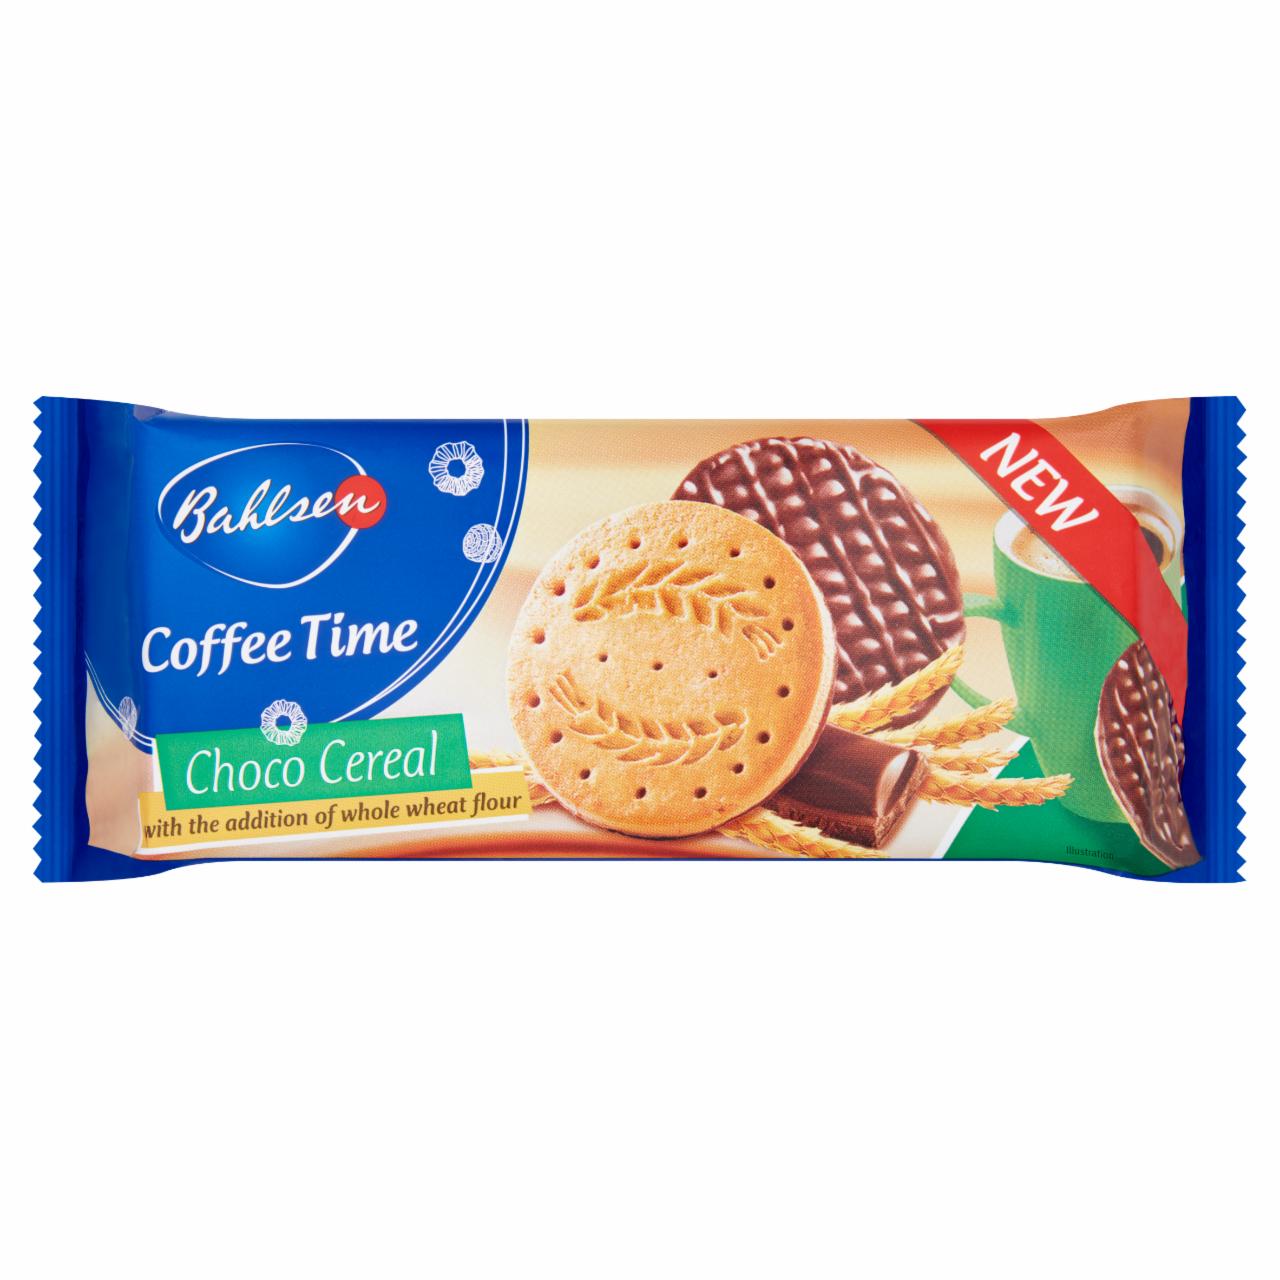 Képek - Bahlsen Coffee Time keksz tejcsokoládéval mártva 143 g